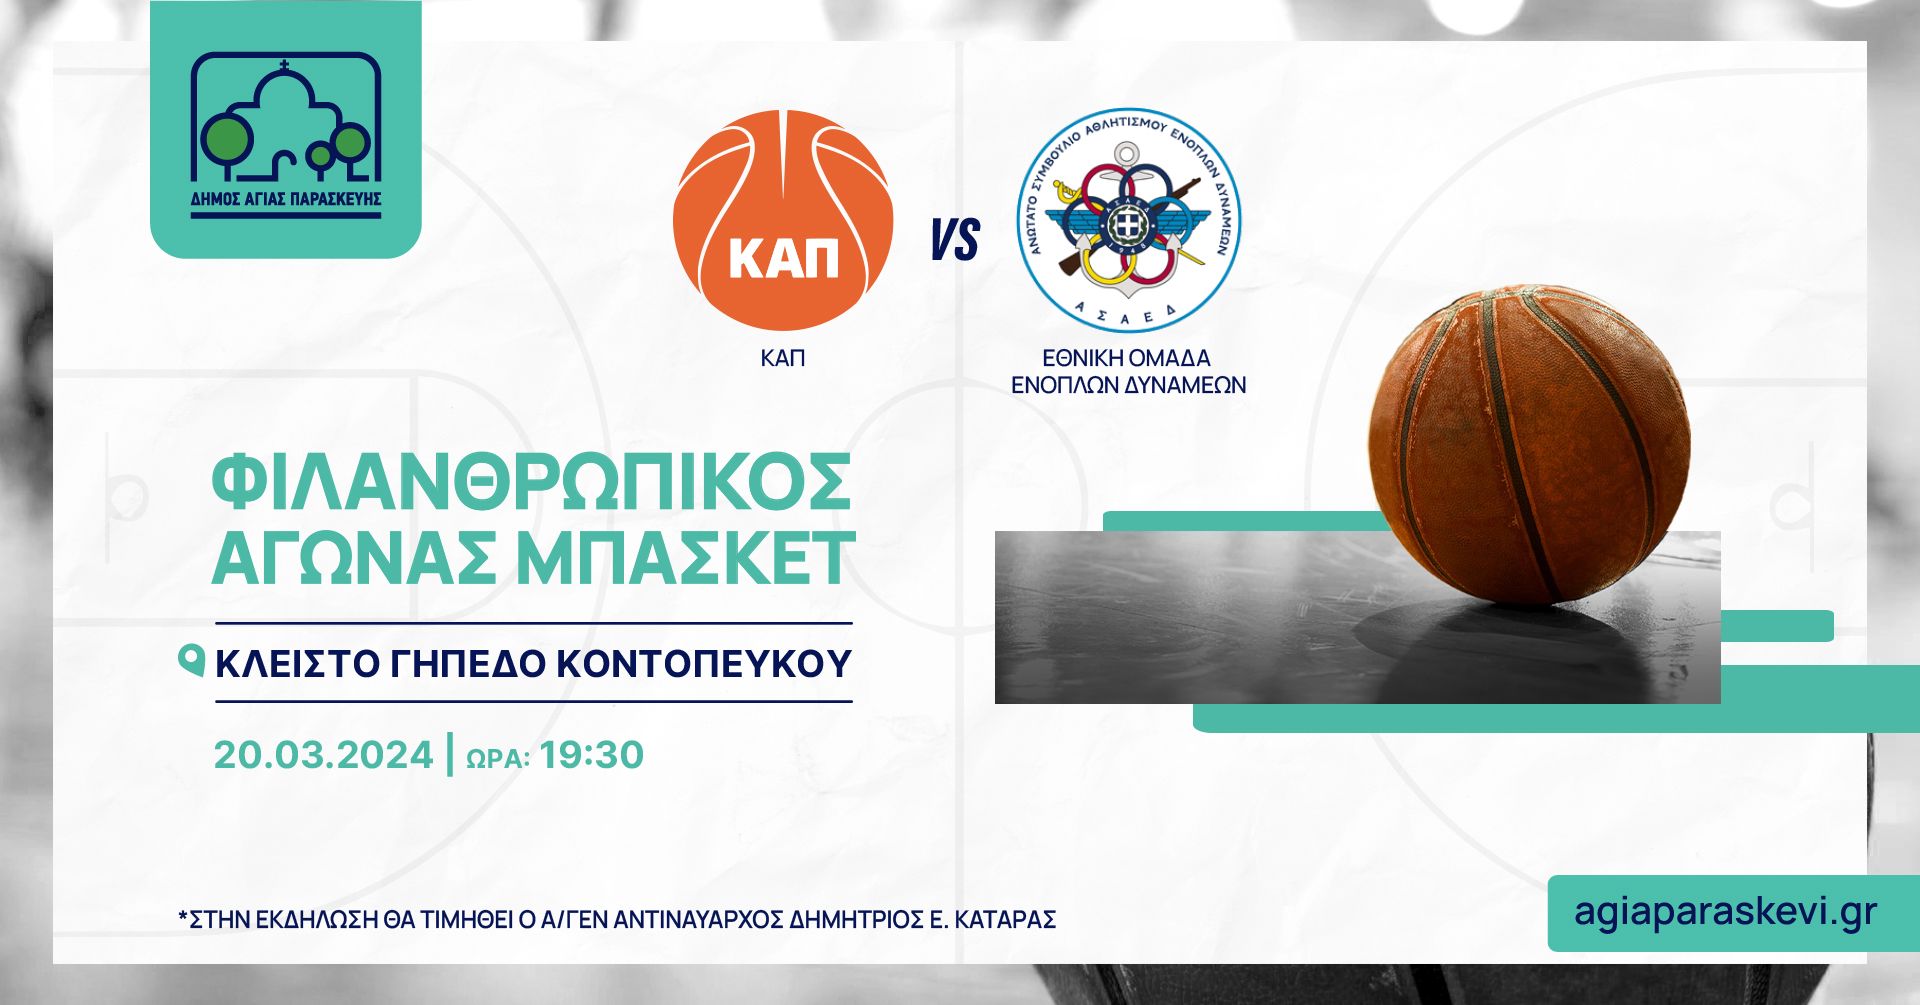 Φιλανθρωπικός αγώνας μπάσκετ μεταξύ του αθλητικού συλλόγου Καλαθοσφαίρισης Αγίας Παρασκευής και της Εθνικής Ομάδας Ενόπλων Δυνάμεων, για την ενίσχυση του Κοινωνικού Μαγειρείου του Δήμου